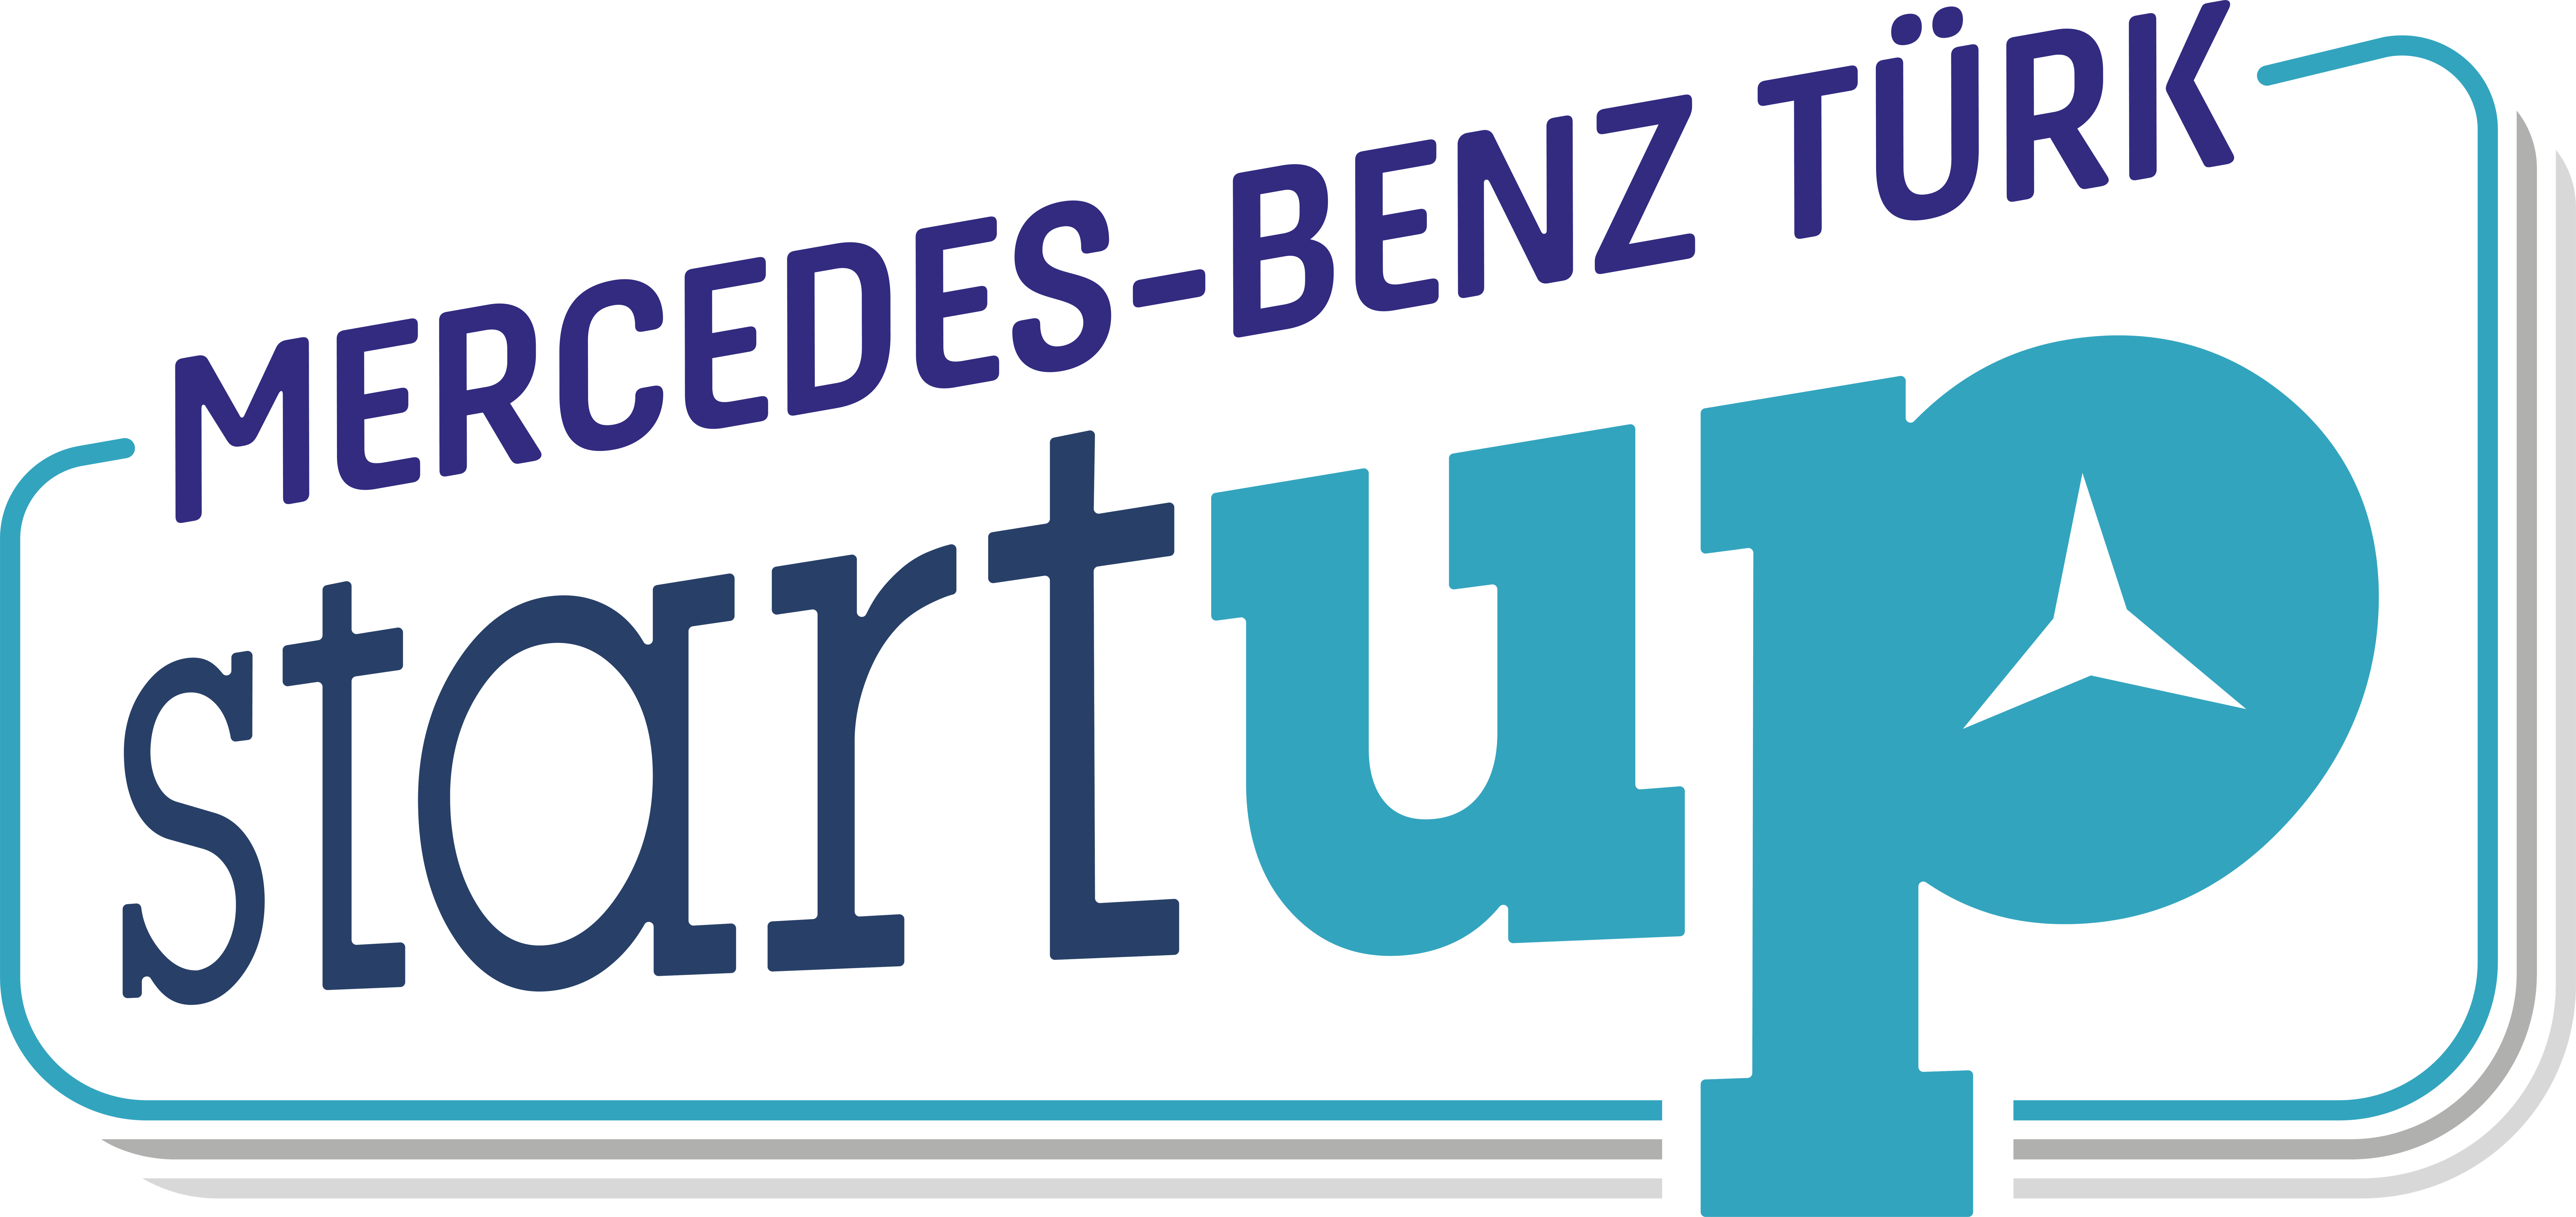 Mercedes-Benz Türk StartUP 2019 Yarışması Başladı 